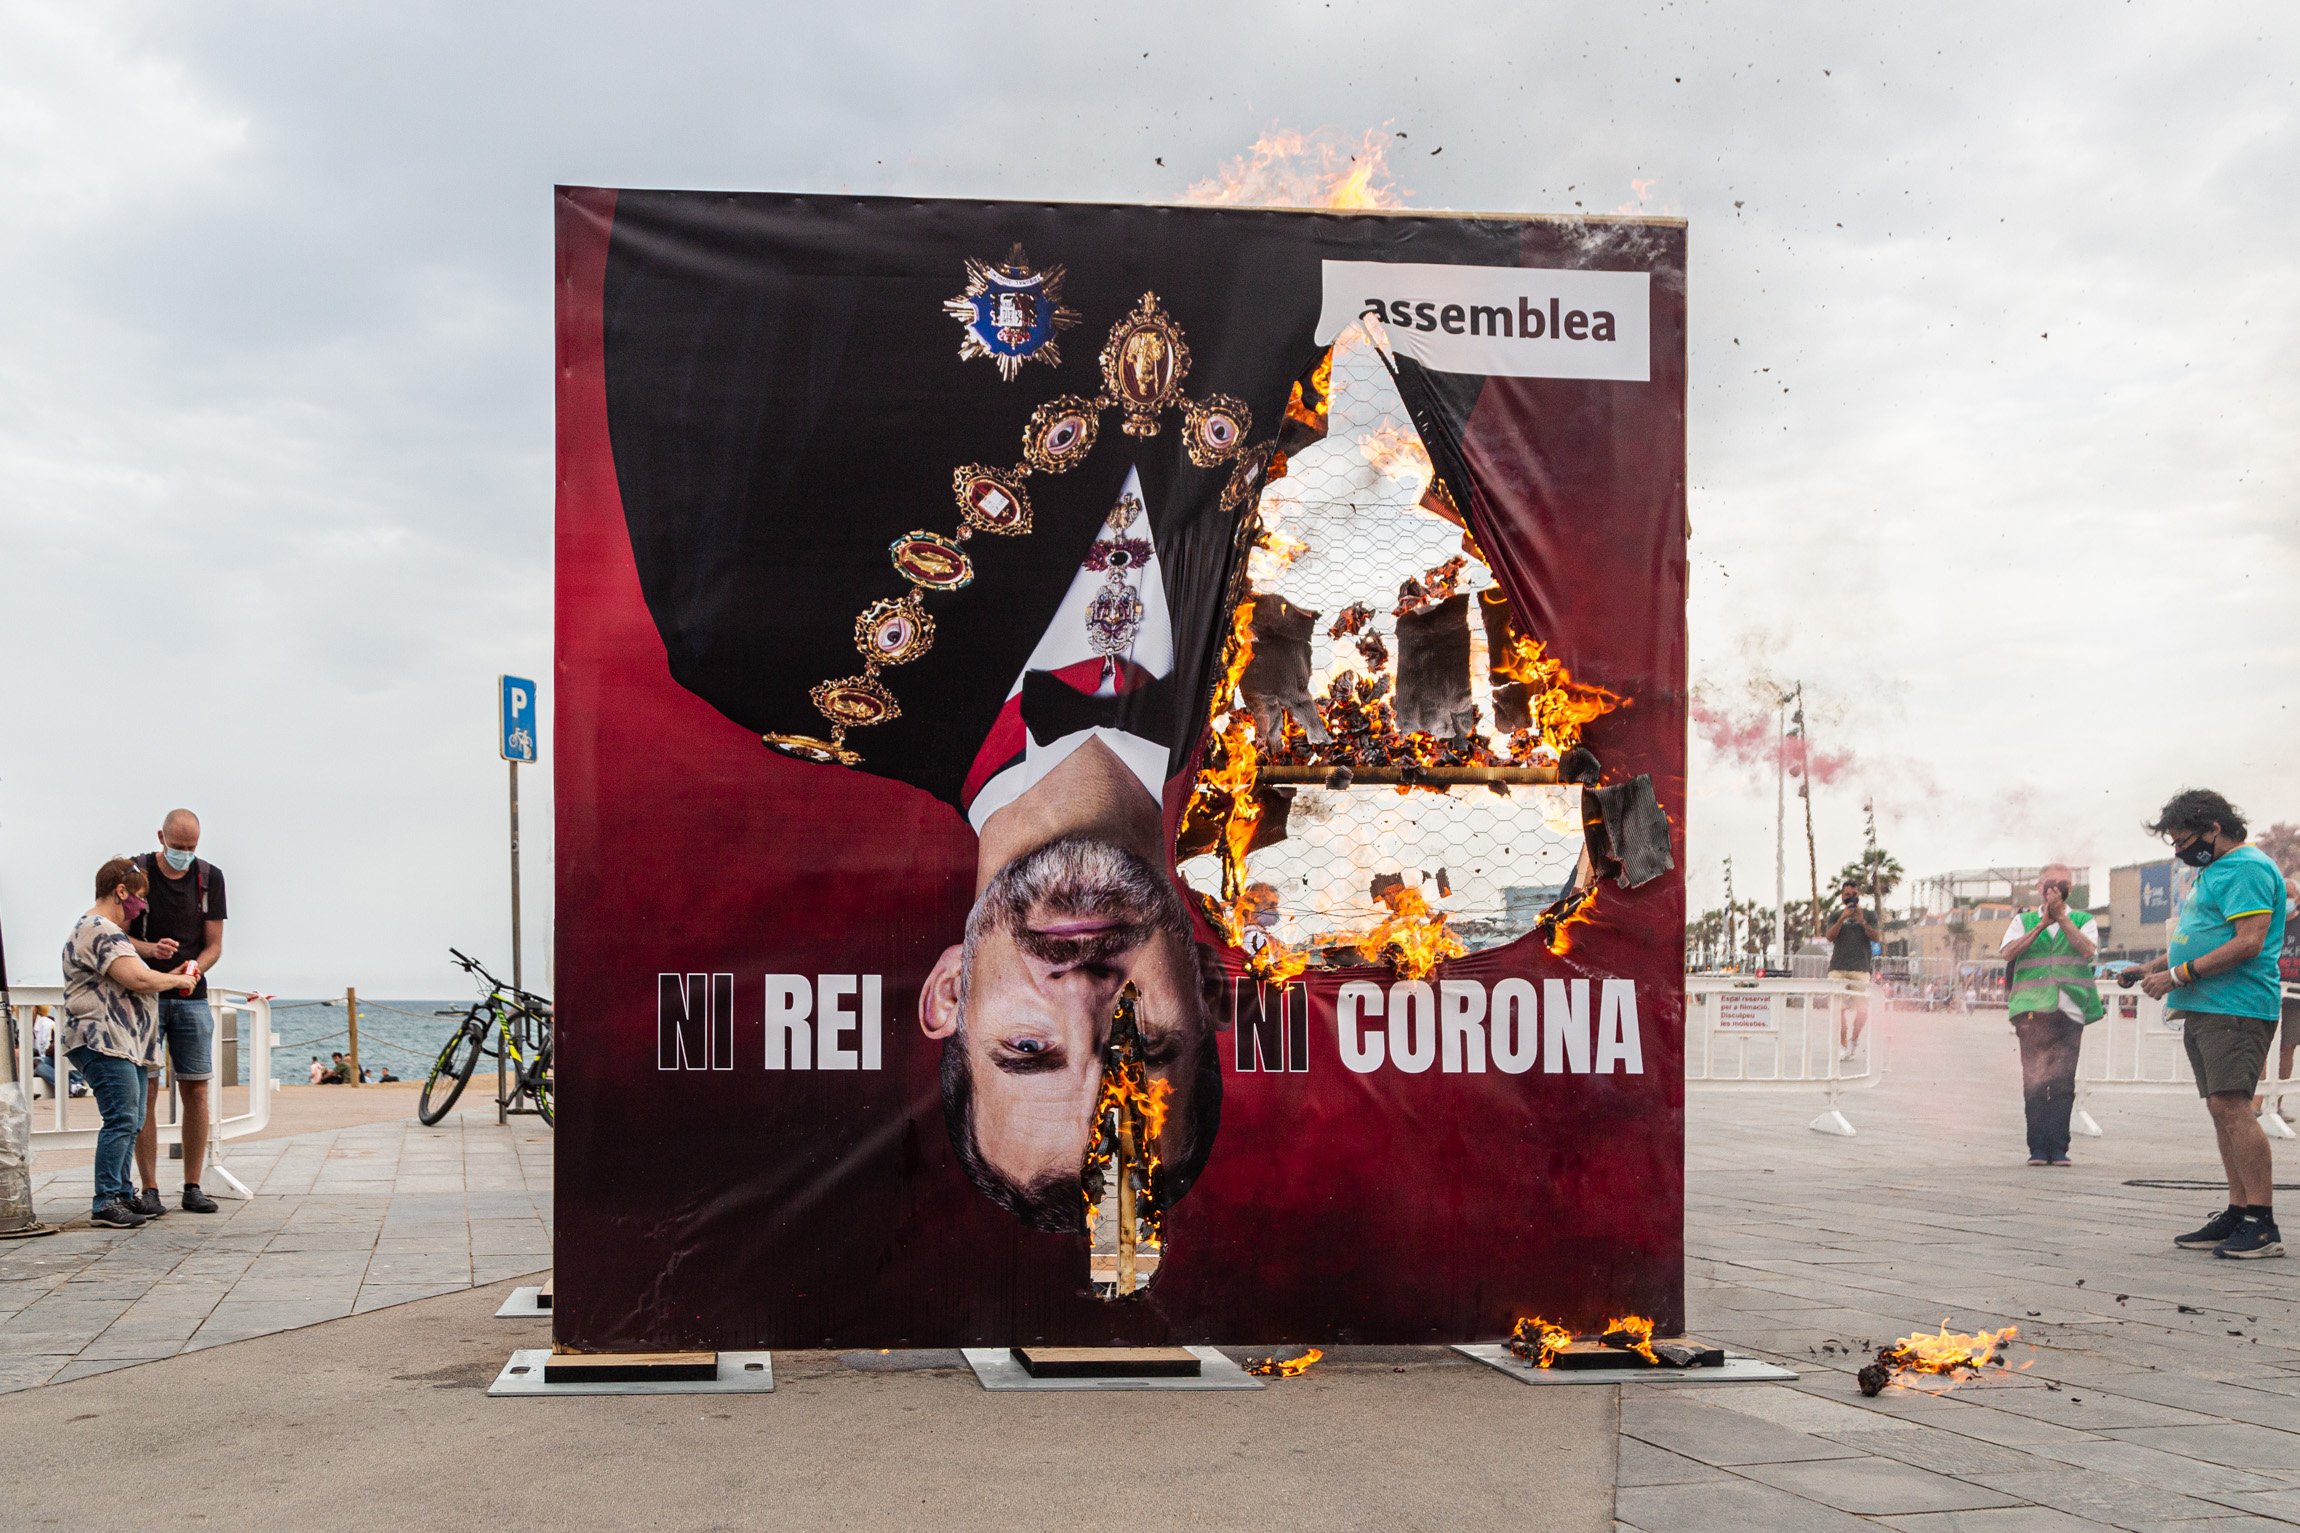 La ANC recibe a Felipe VI quemando un retrato suyo y avisa a los partidos